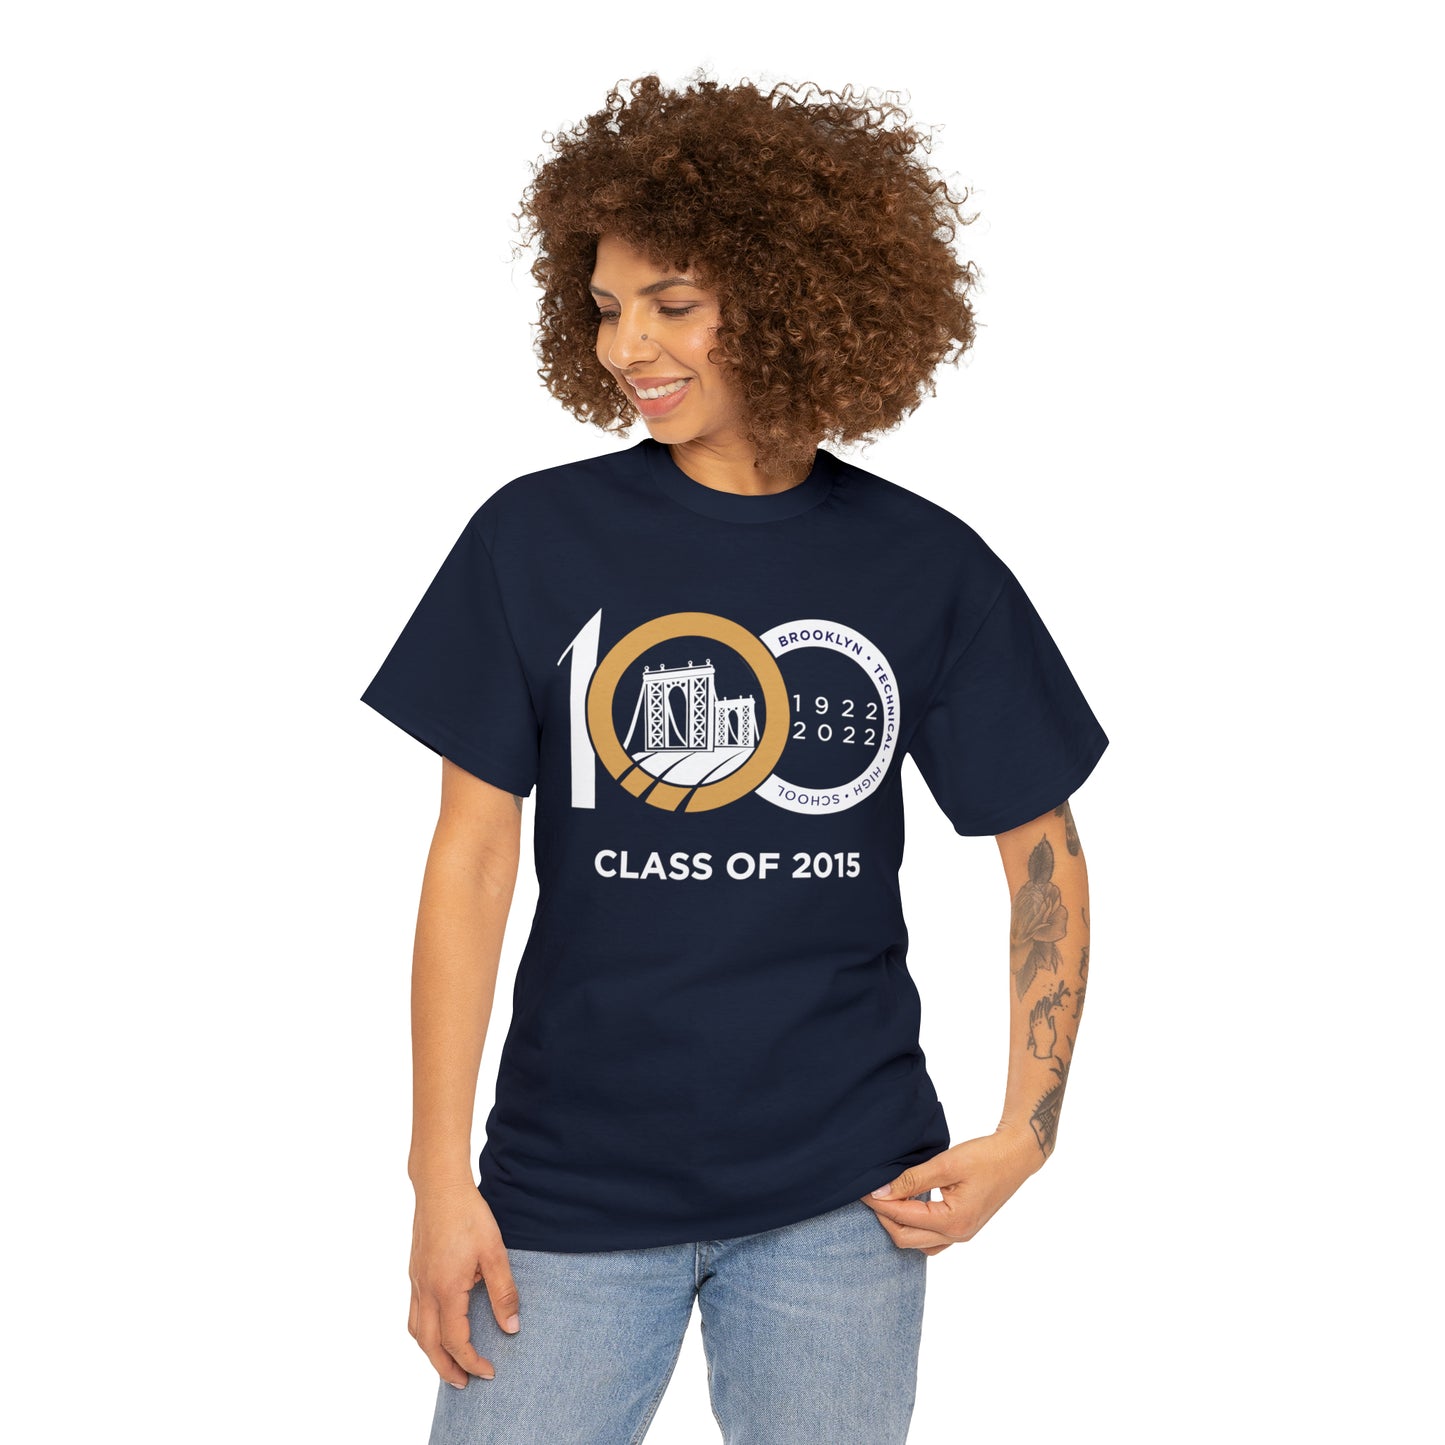 Centennial - Men's Heavy Cotton T-Shirt - Class Of 2015